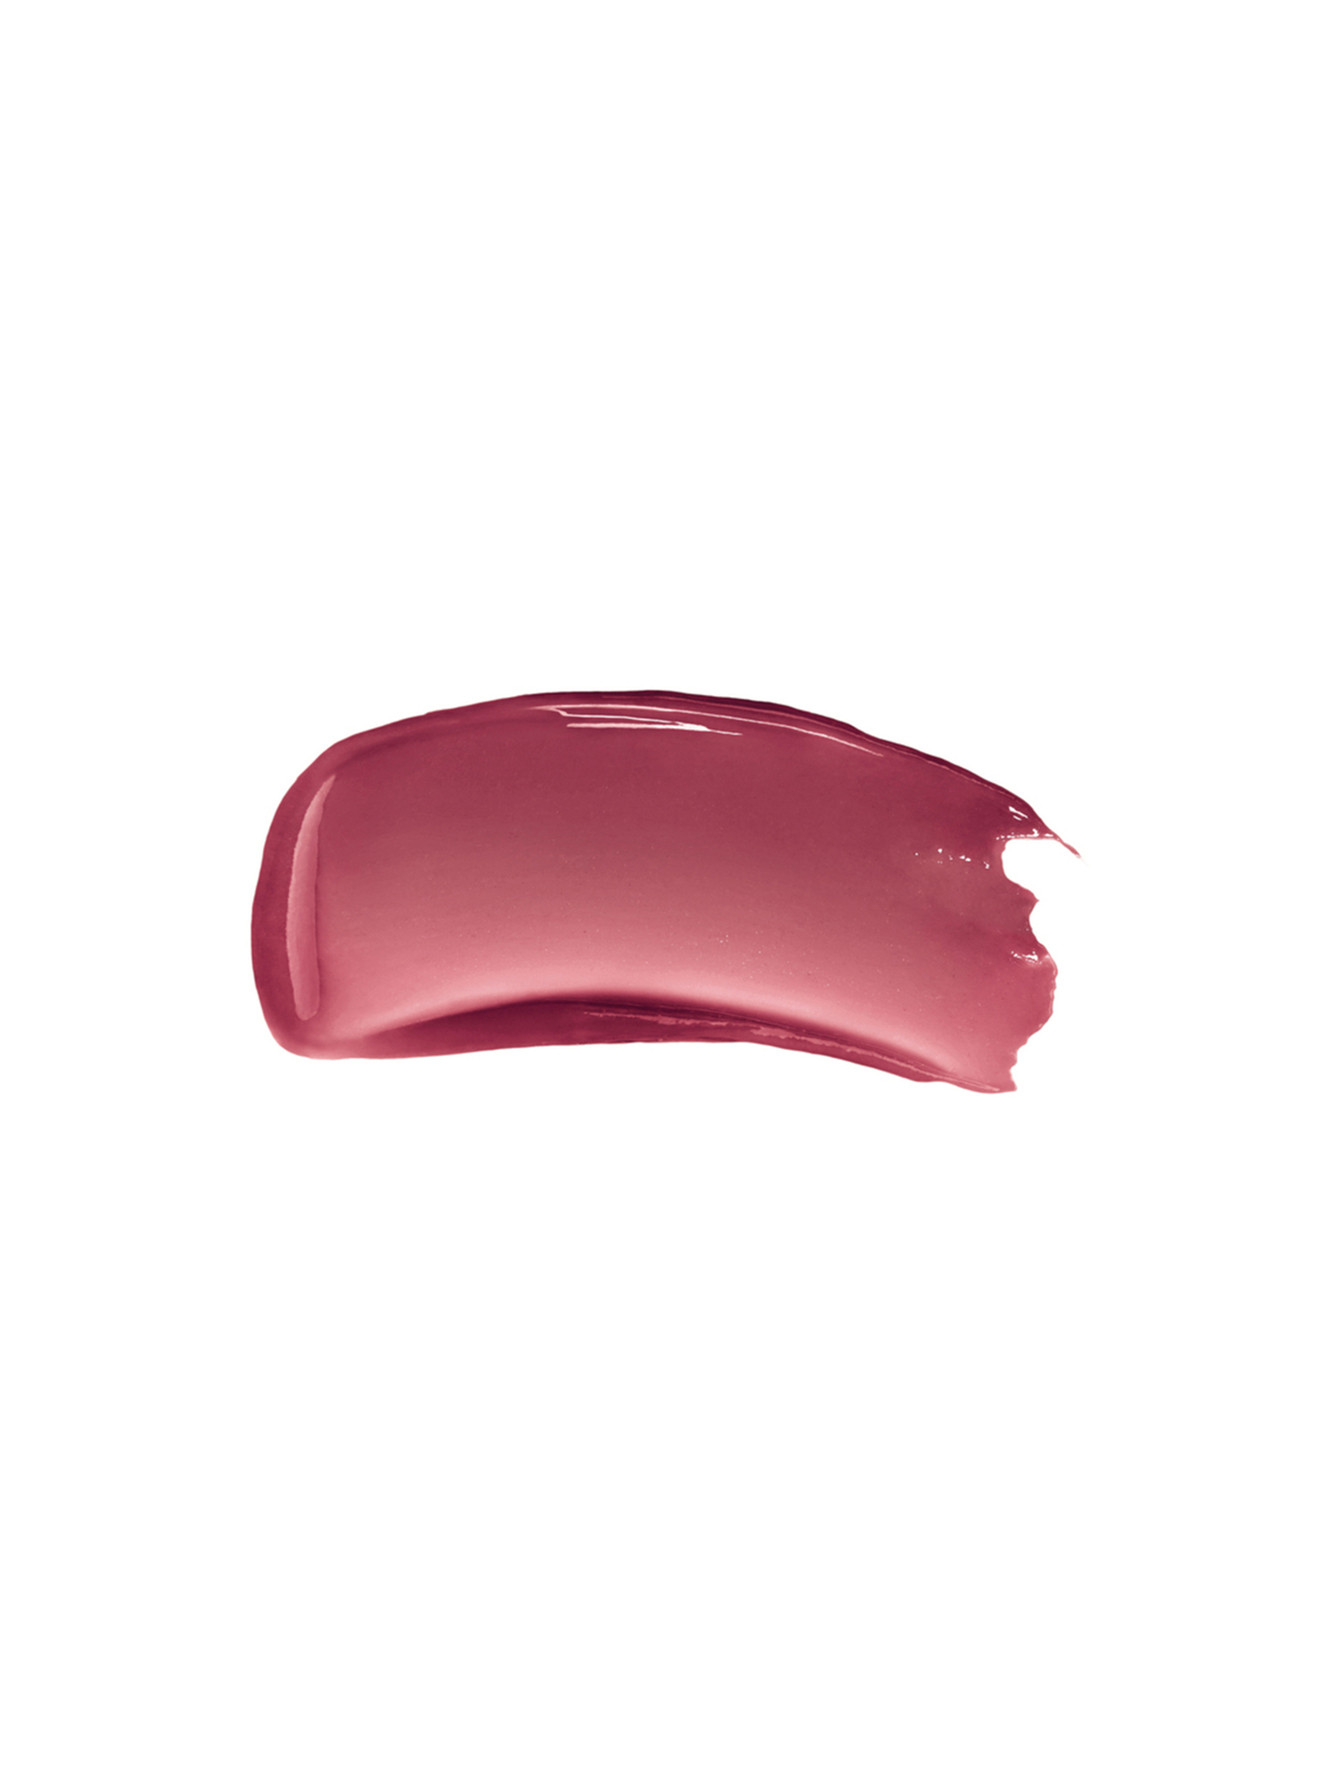 Жидкий бальзам для губ Rose Perfecto Liquid Balm, 011 черный розовый, 6 мл - Обтравка1